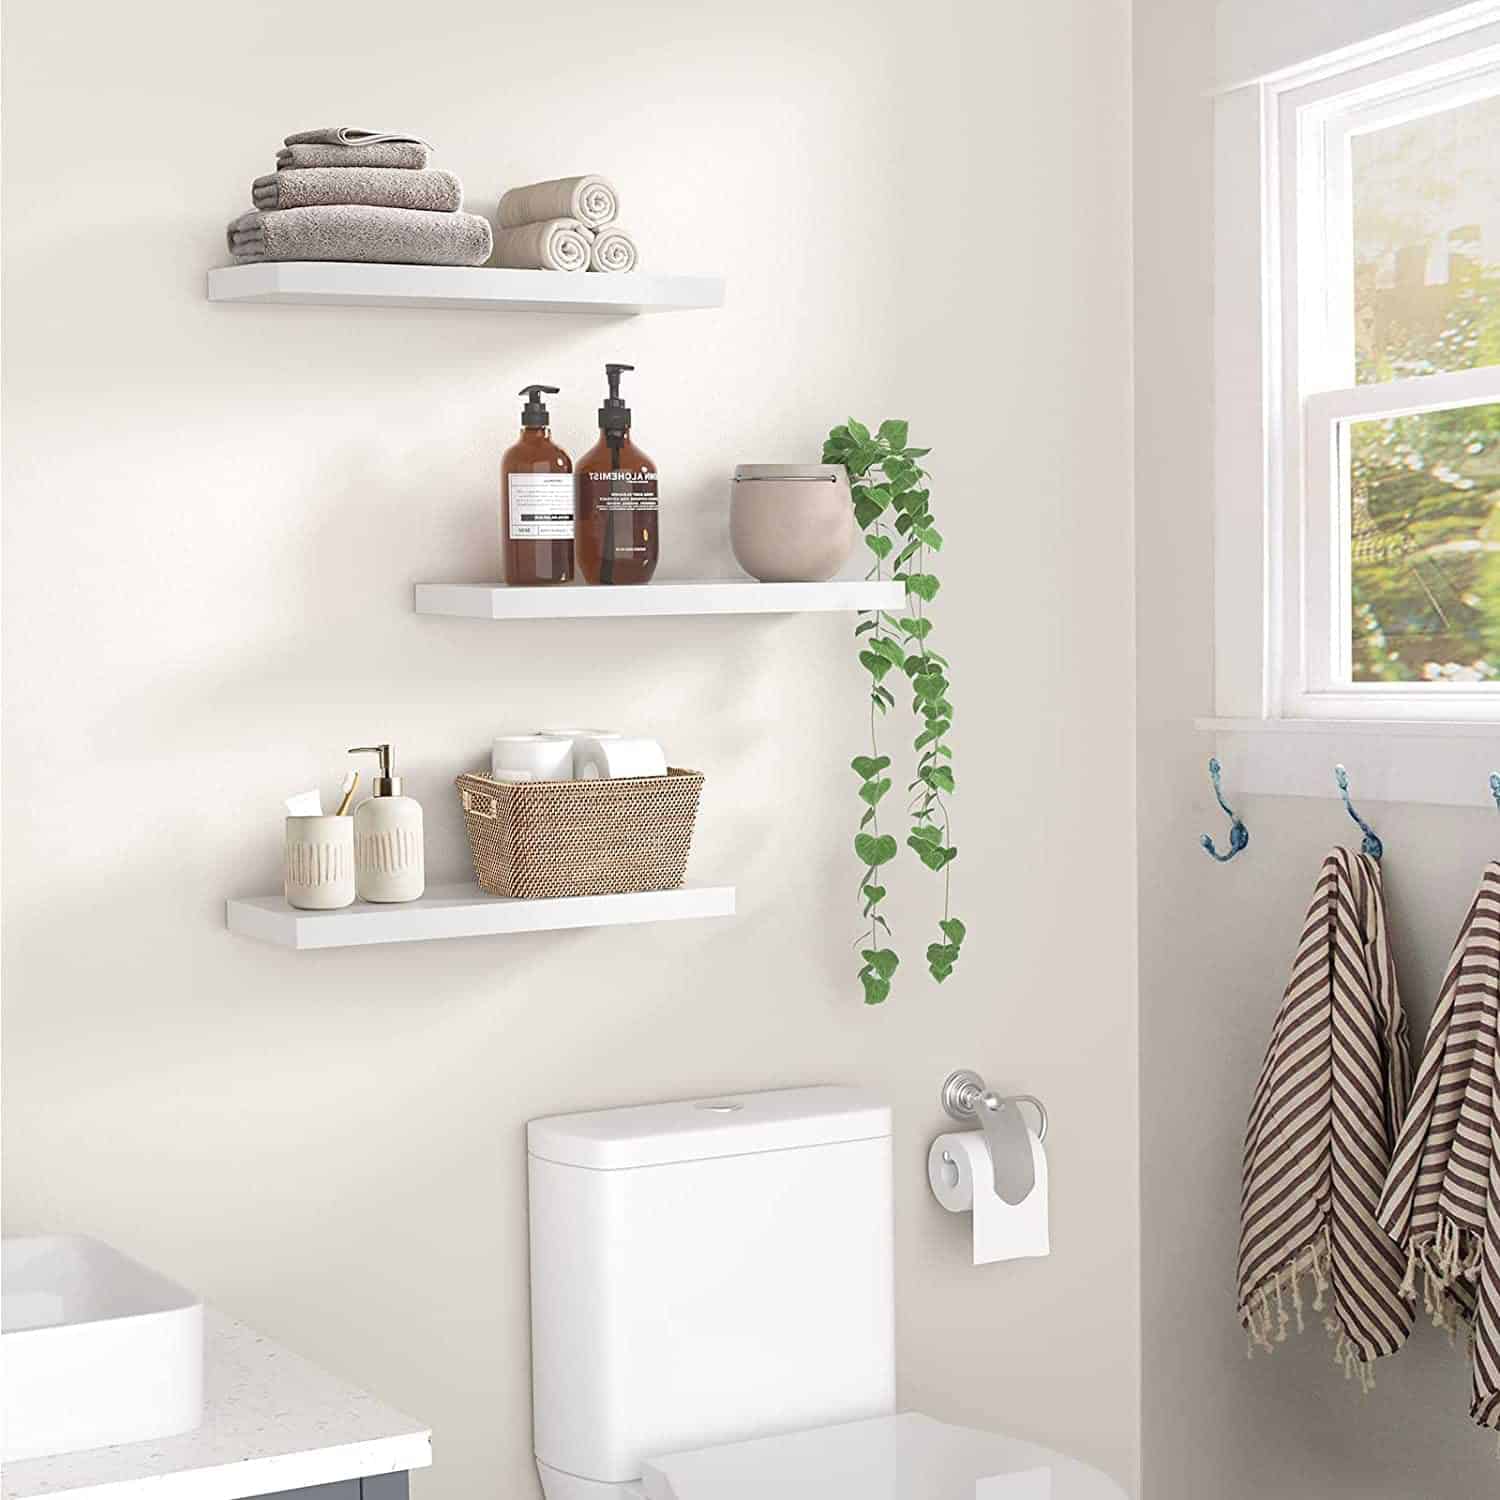 White floating shelves in bathroom for storing toiletries